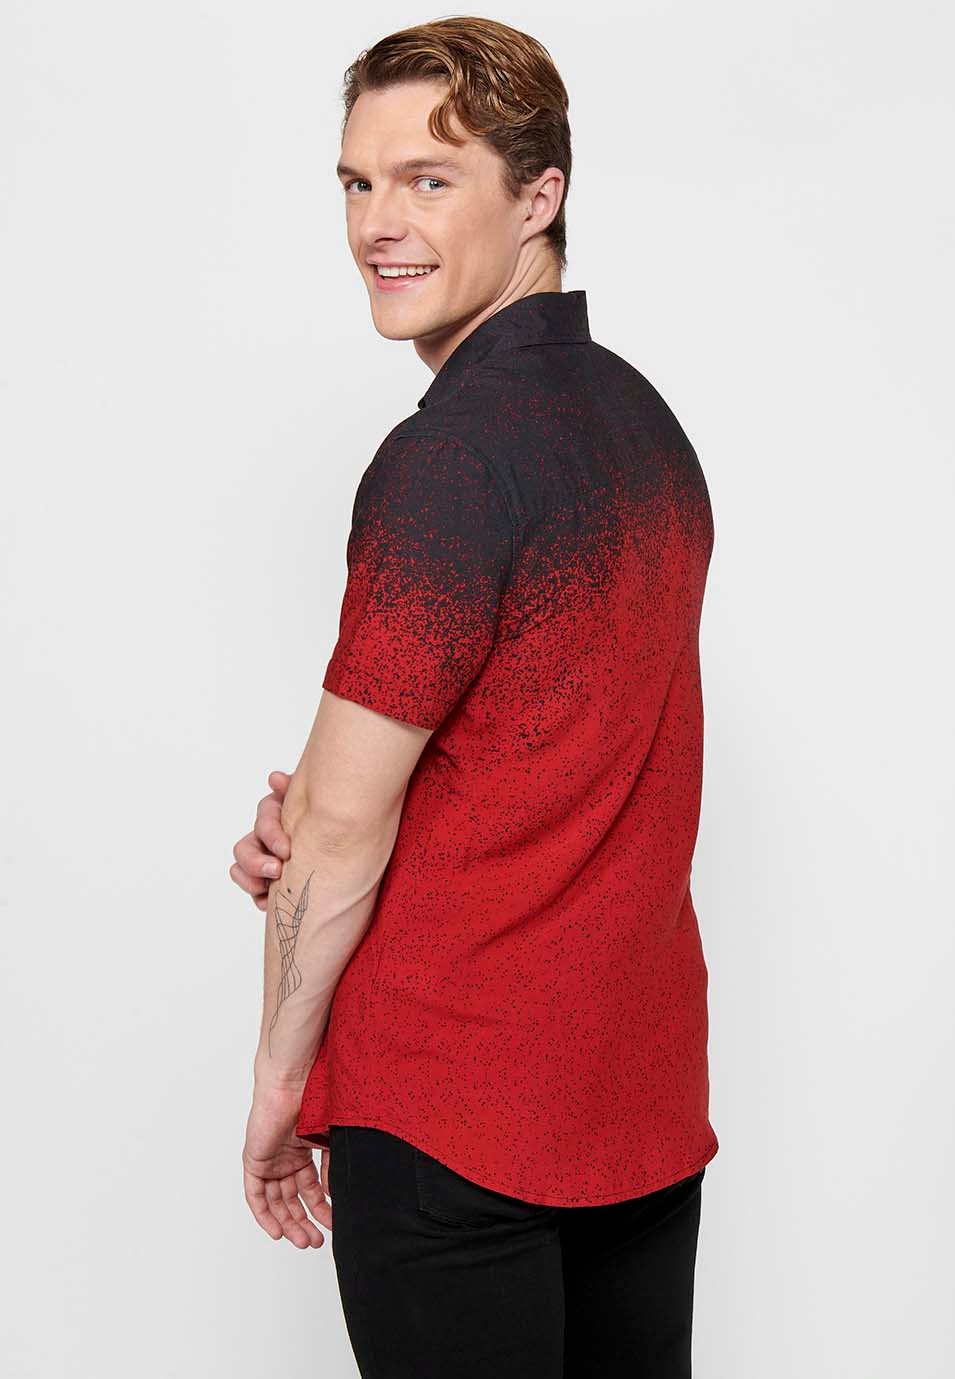 Camisa manga corta en degradado rojo para hombres